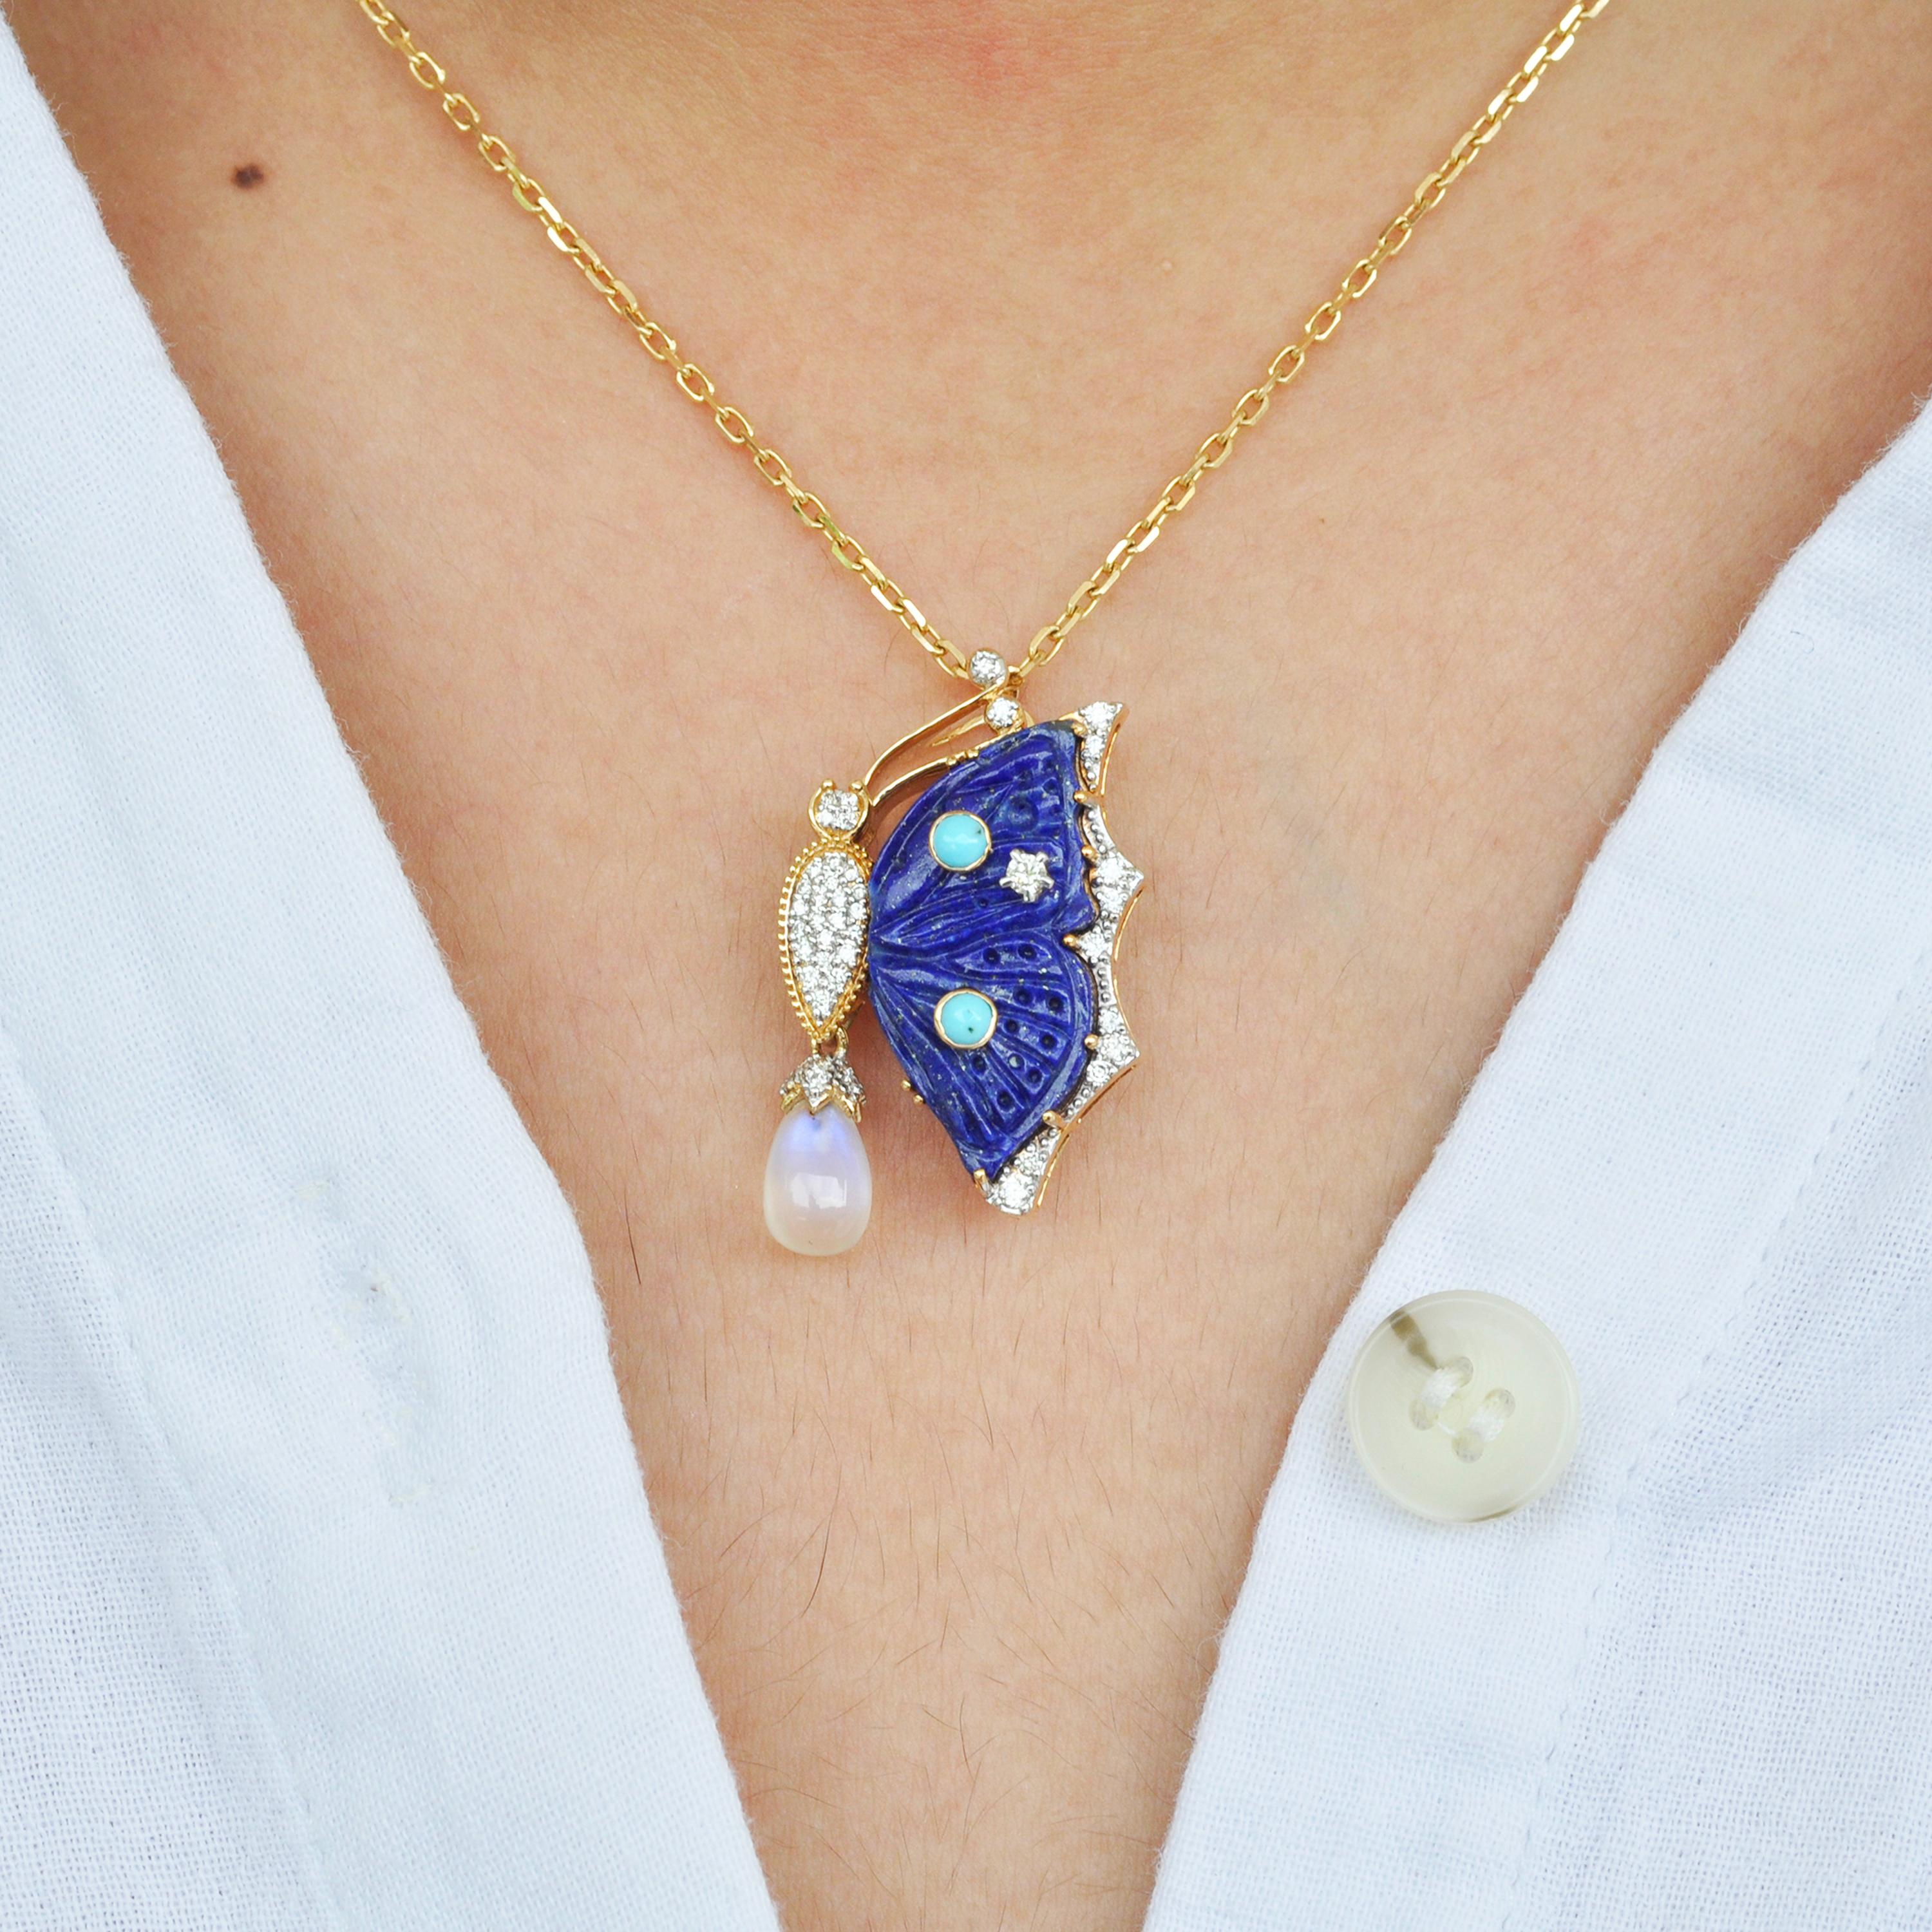 Broche pendentif en or 18 carats lapis lazuli papillon turquoise pierre de lune diamant.

Le processus de fabrication de ce pendentif broche en or 18 carats serti de diamants étincelants a commencé comme celui d'un papillon. Tout comme la petite